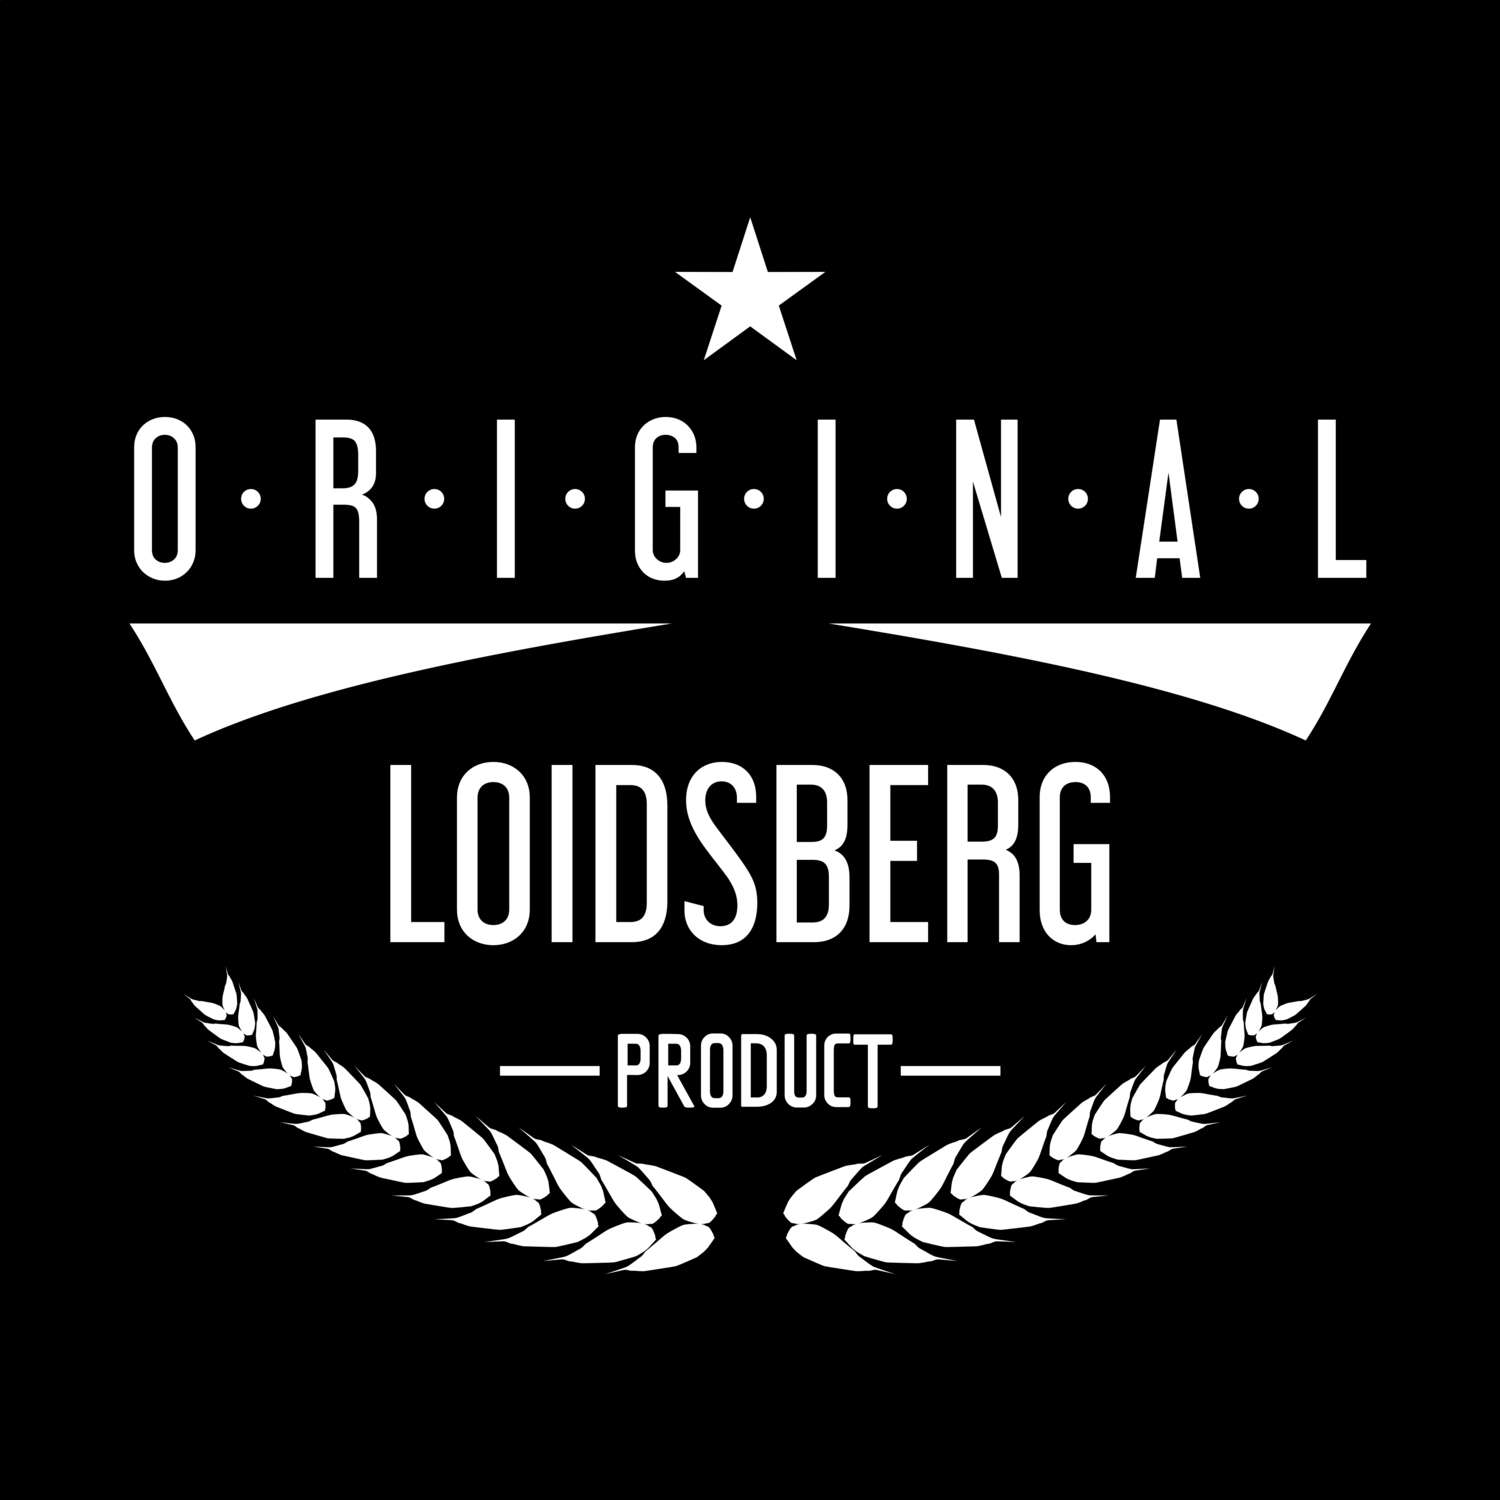 Loidsberg T-Shirt »Original Product«